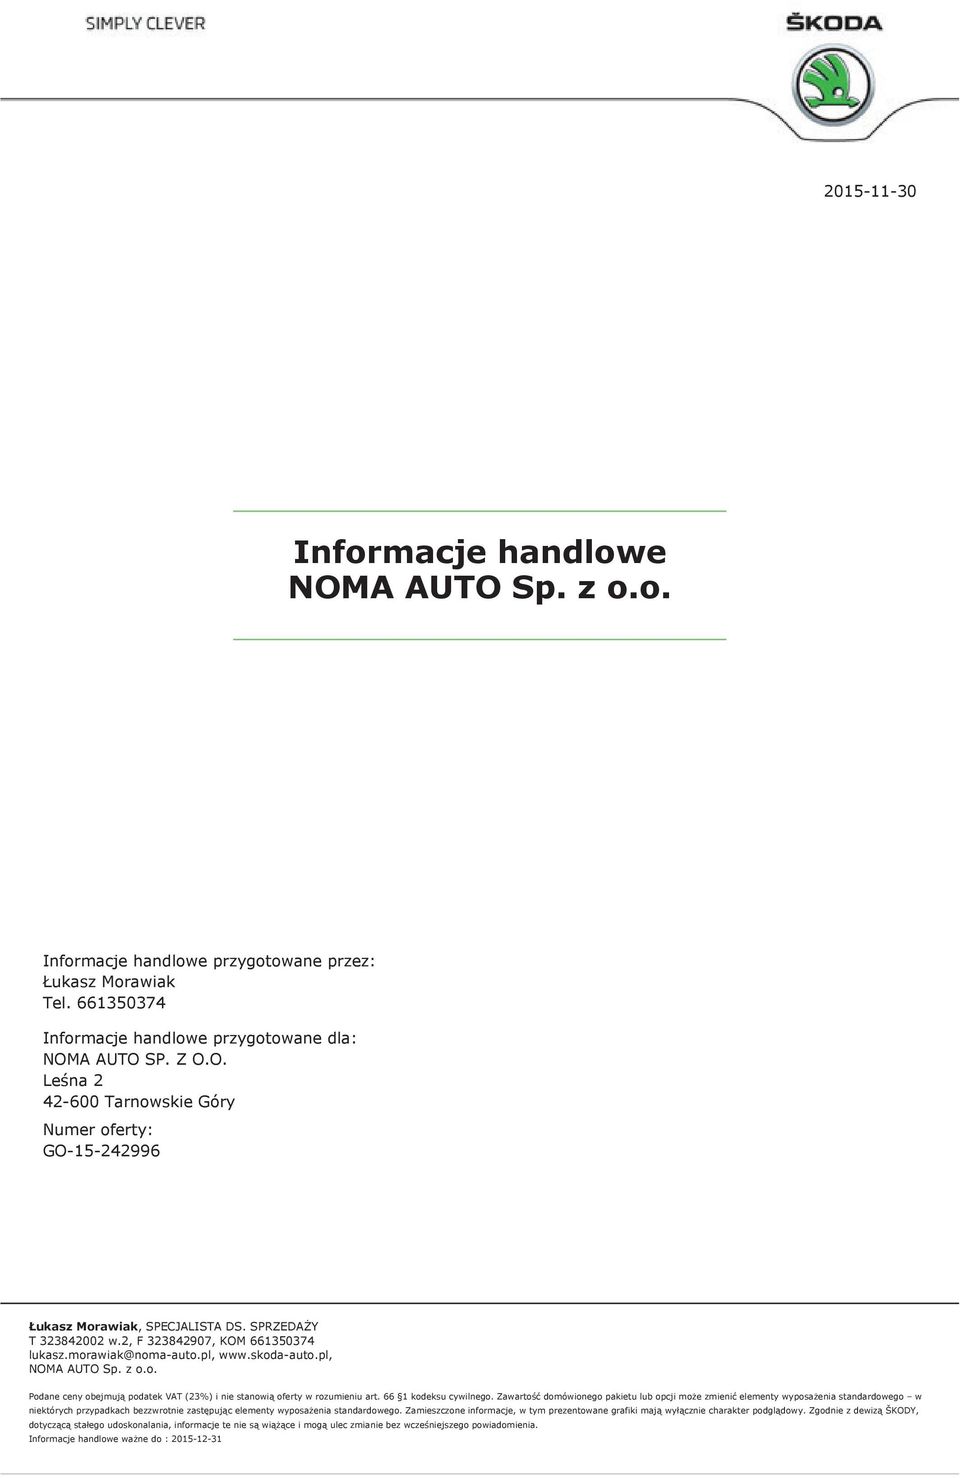 661350374 Informacje handlowe przygotowane dla: NOMA